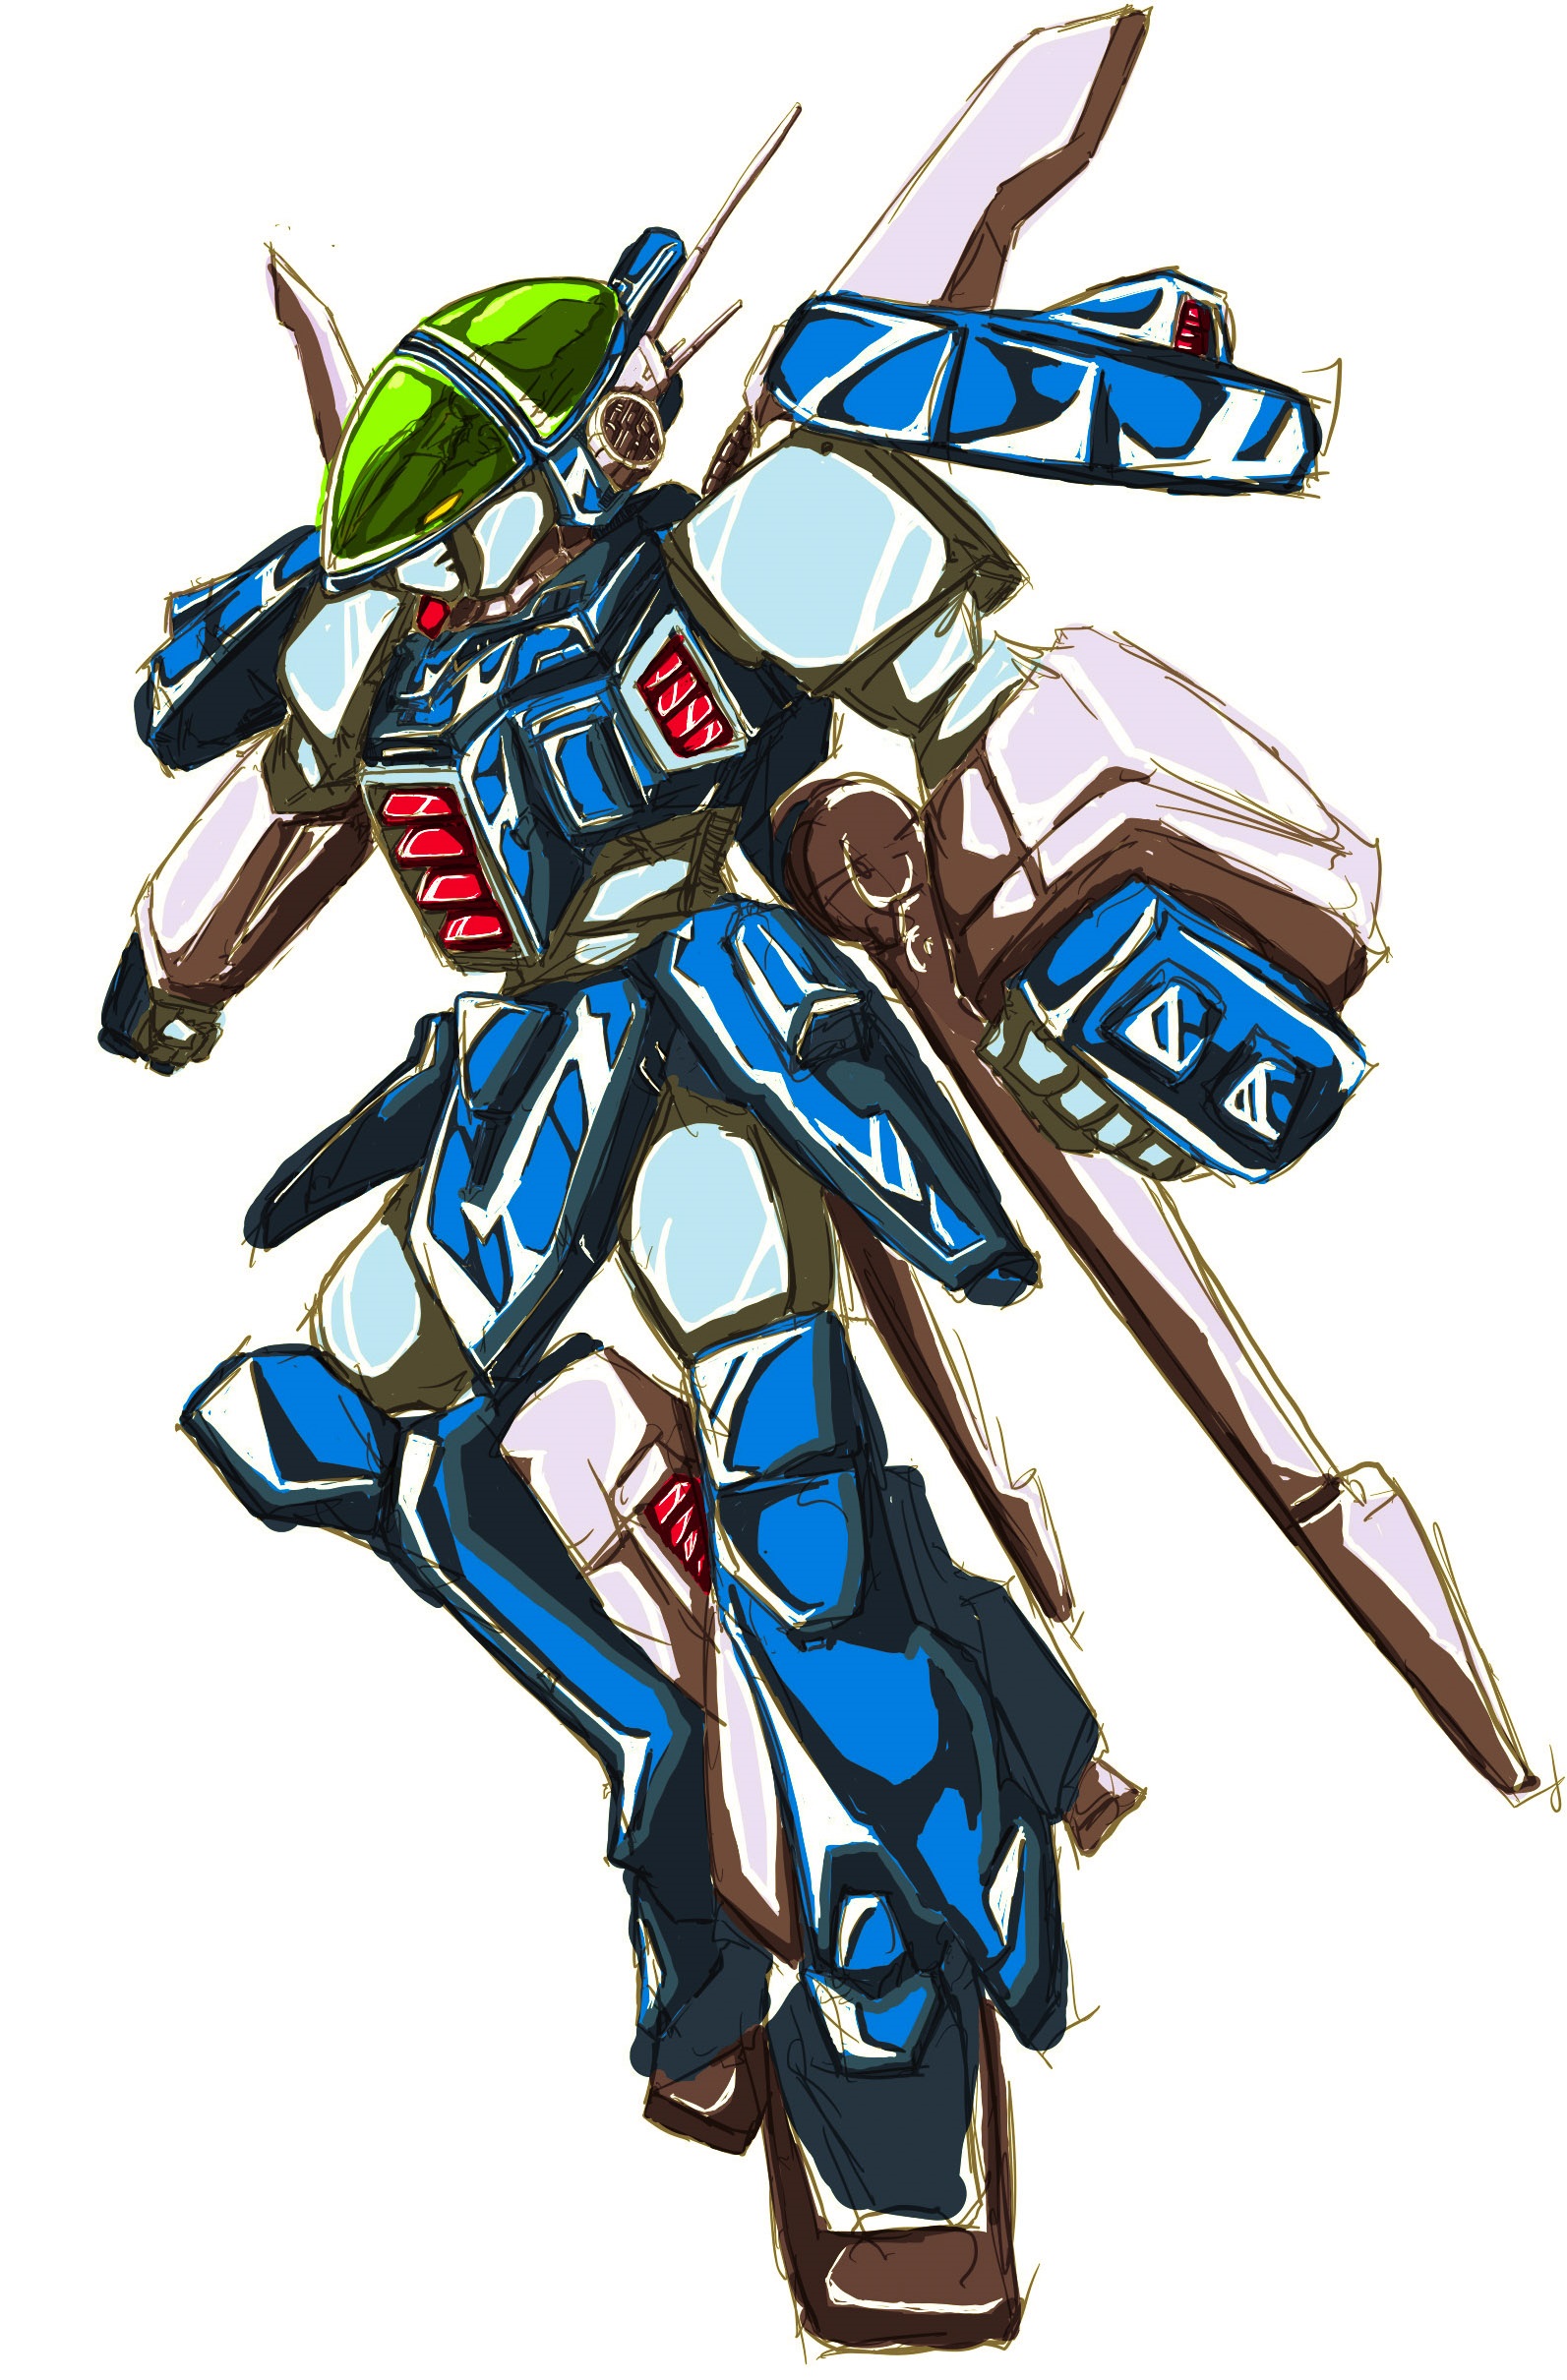 Anime 1593x2420 anime mechs Layzner Blue Meteor SPT Layzner Super Robot Taisen artwork digital art fan art